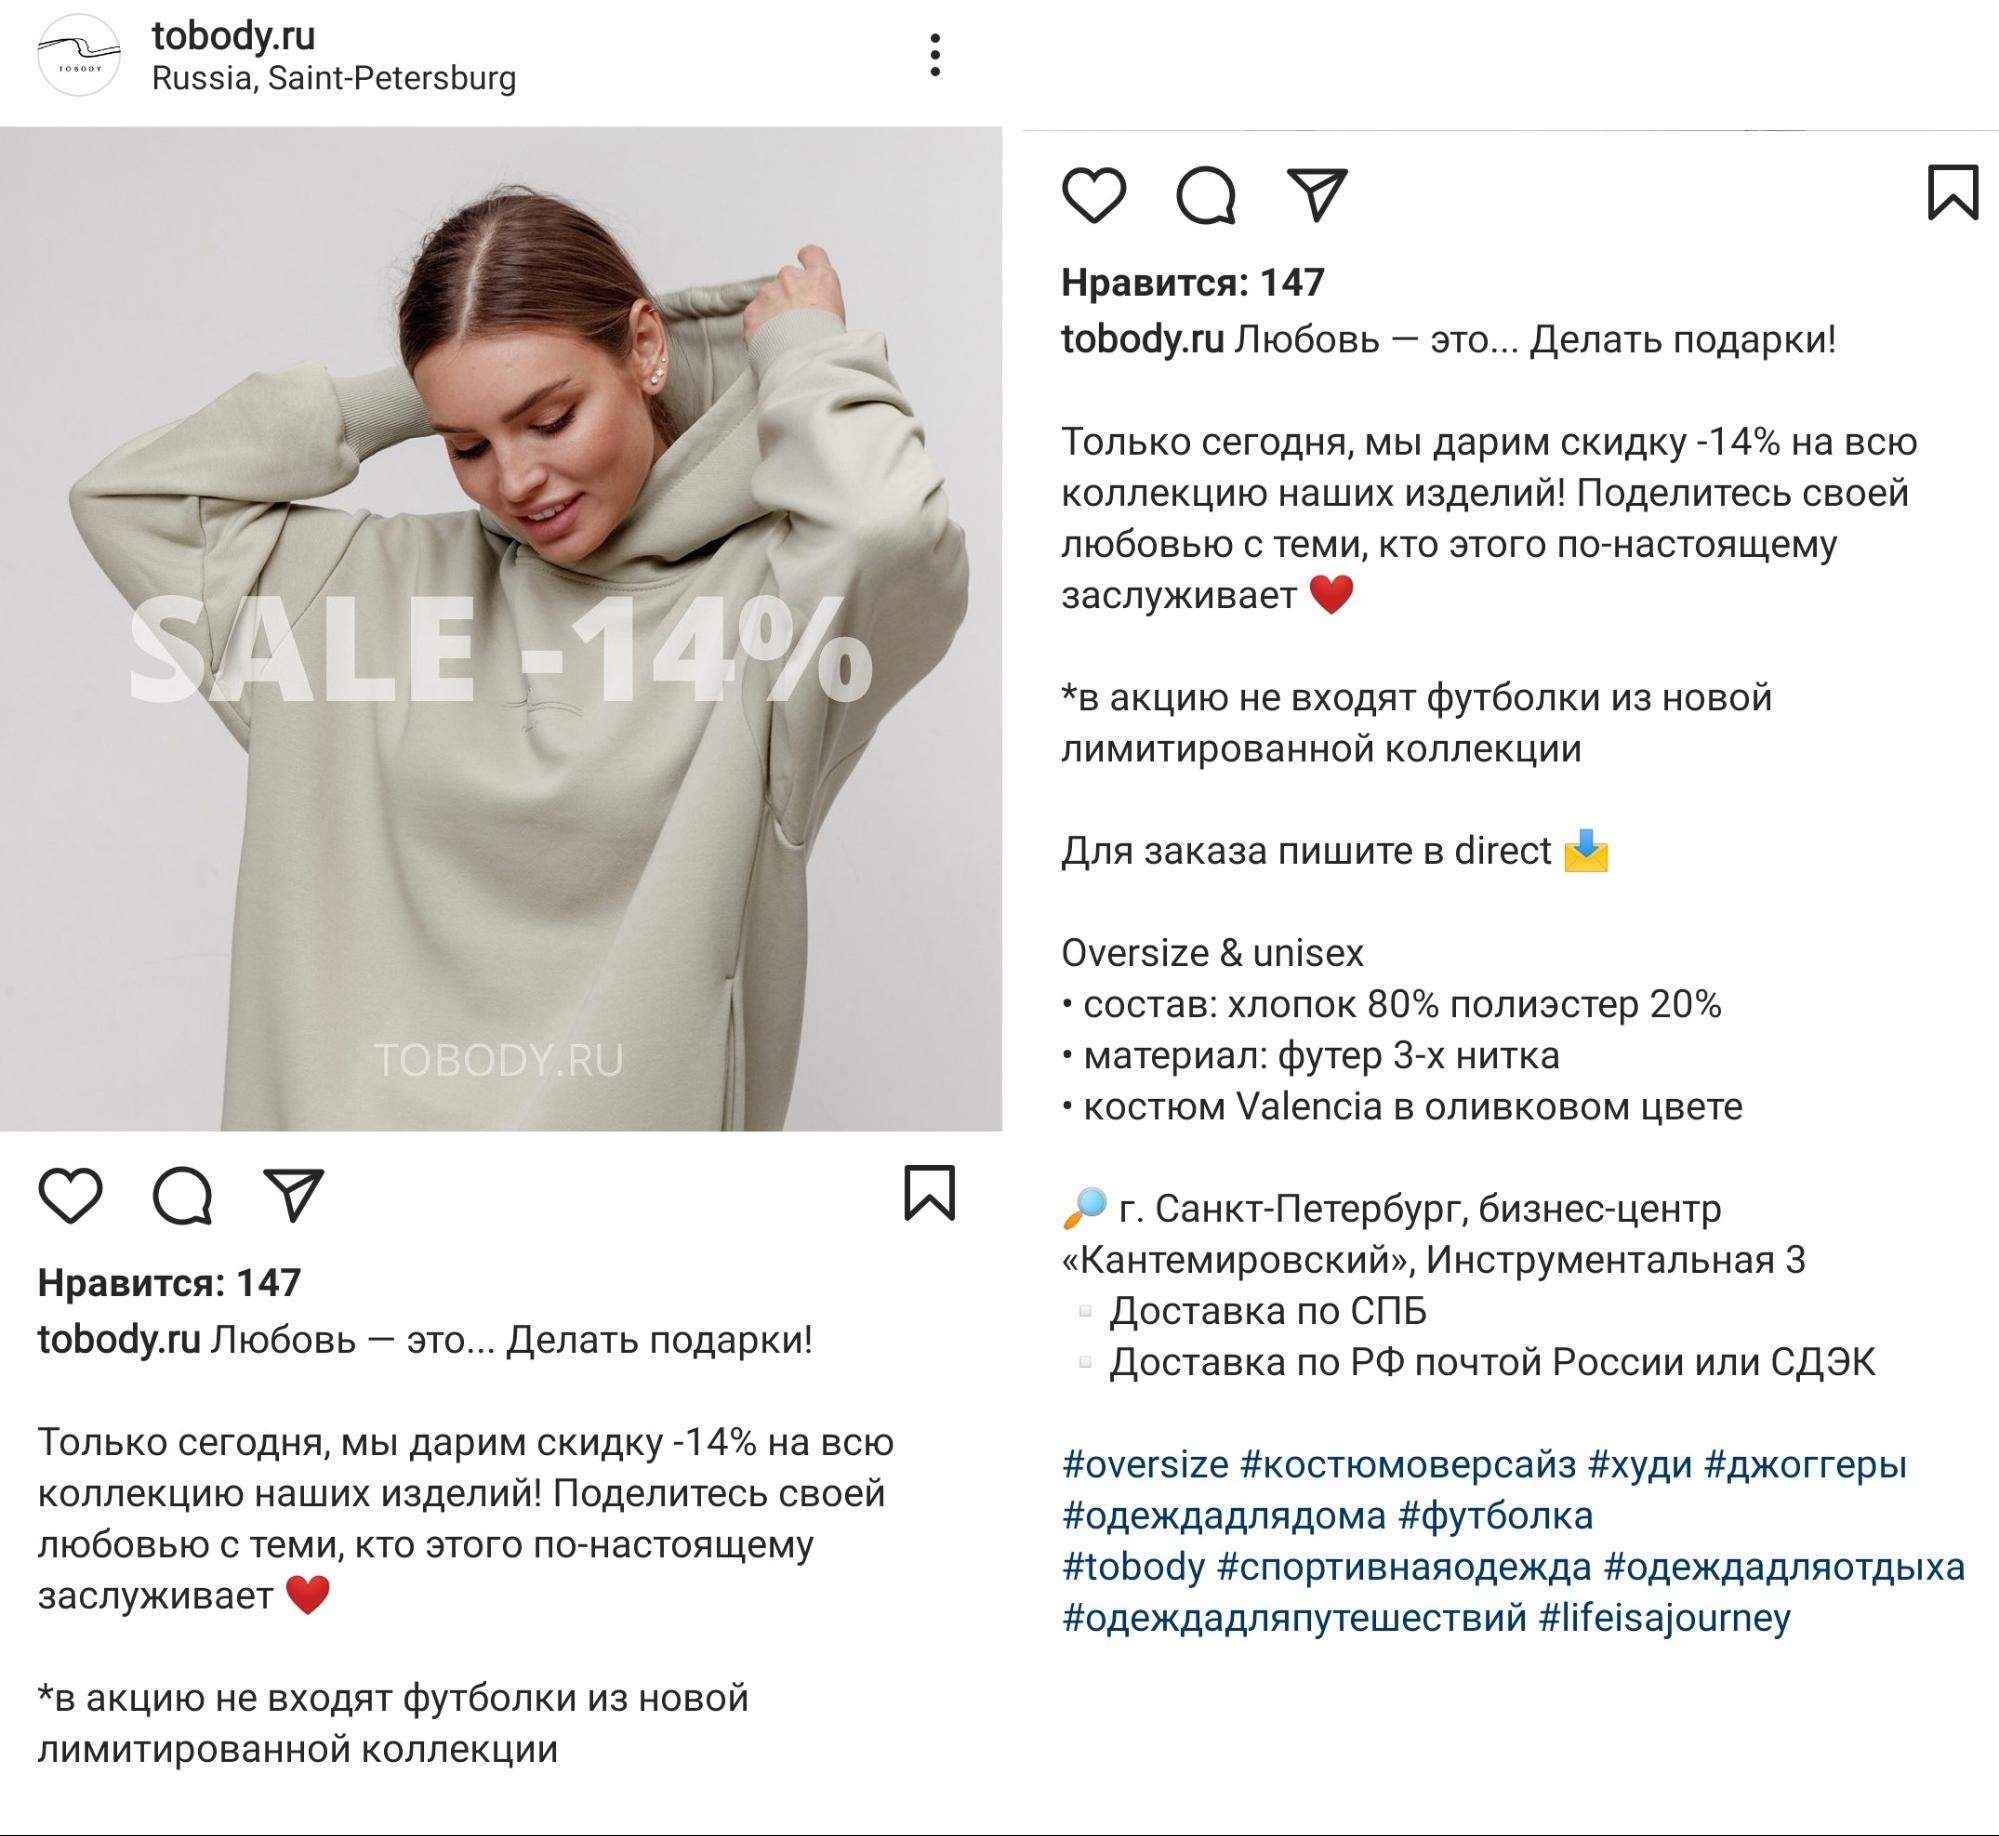 Интернет-магазин в Instagram: как оформить профиль и вести аккаунт | iProWeb